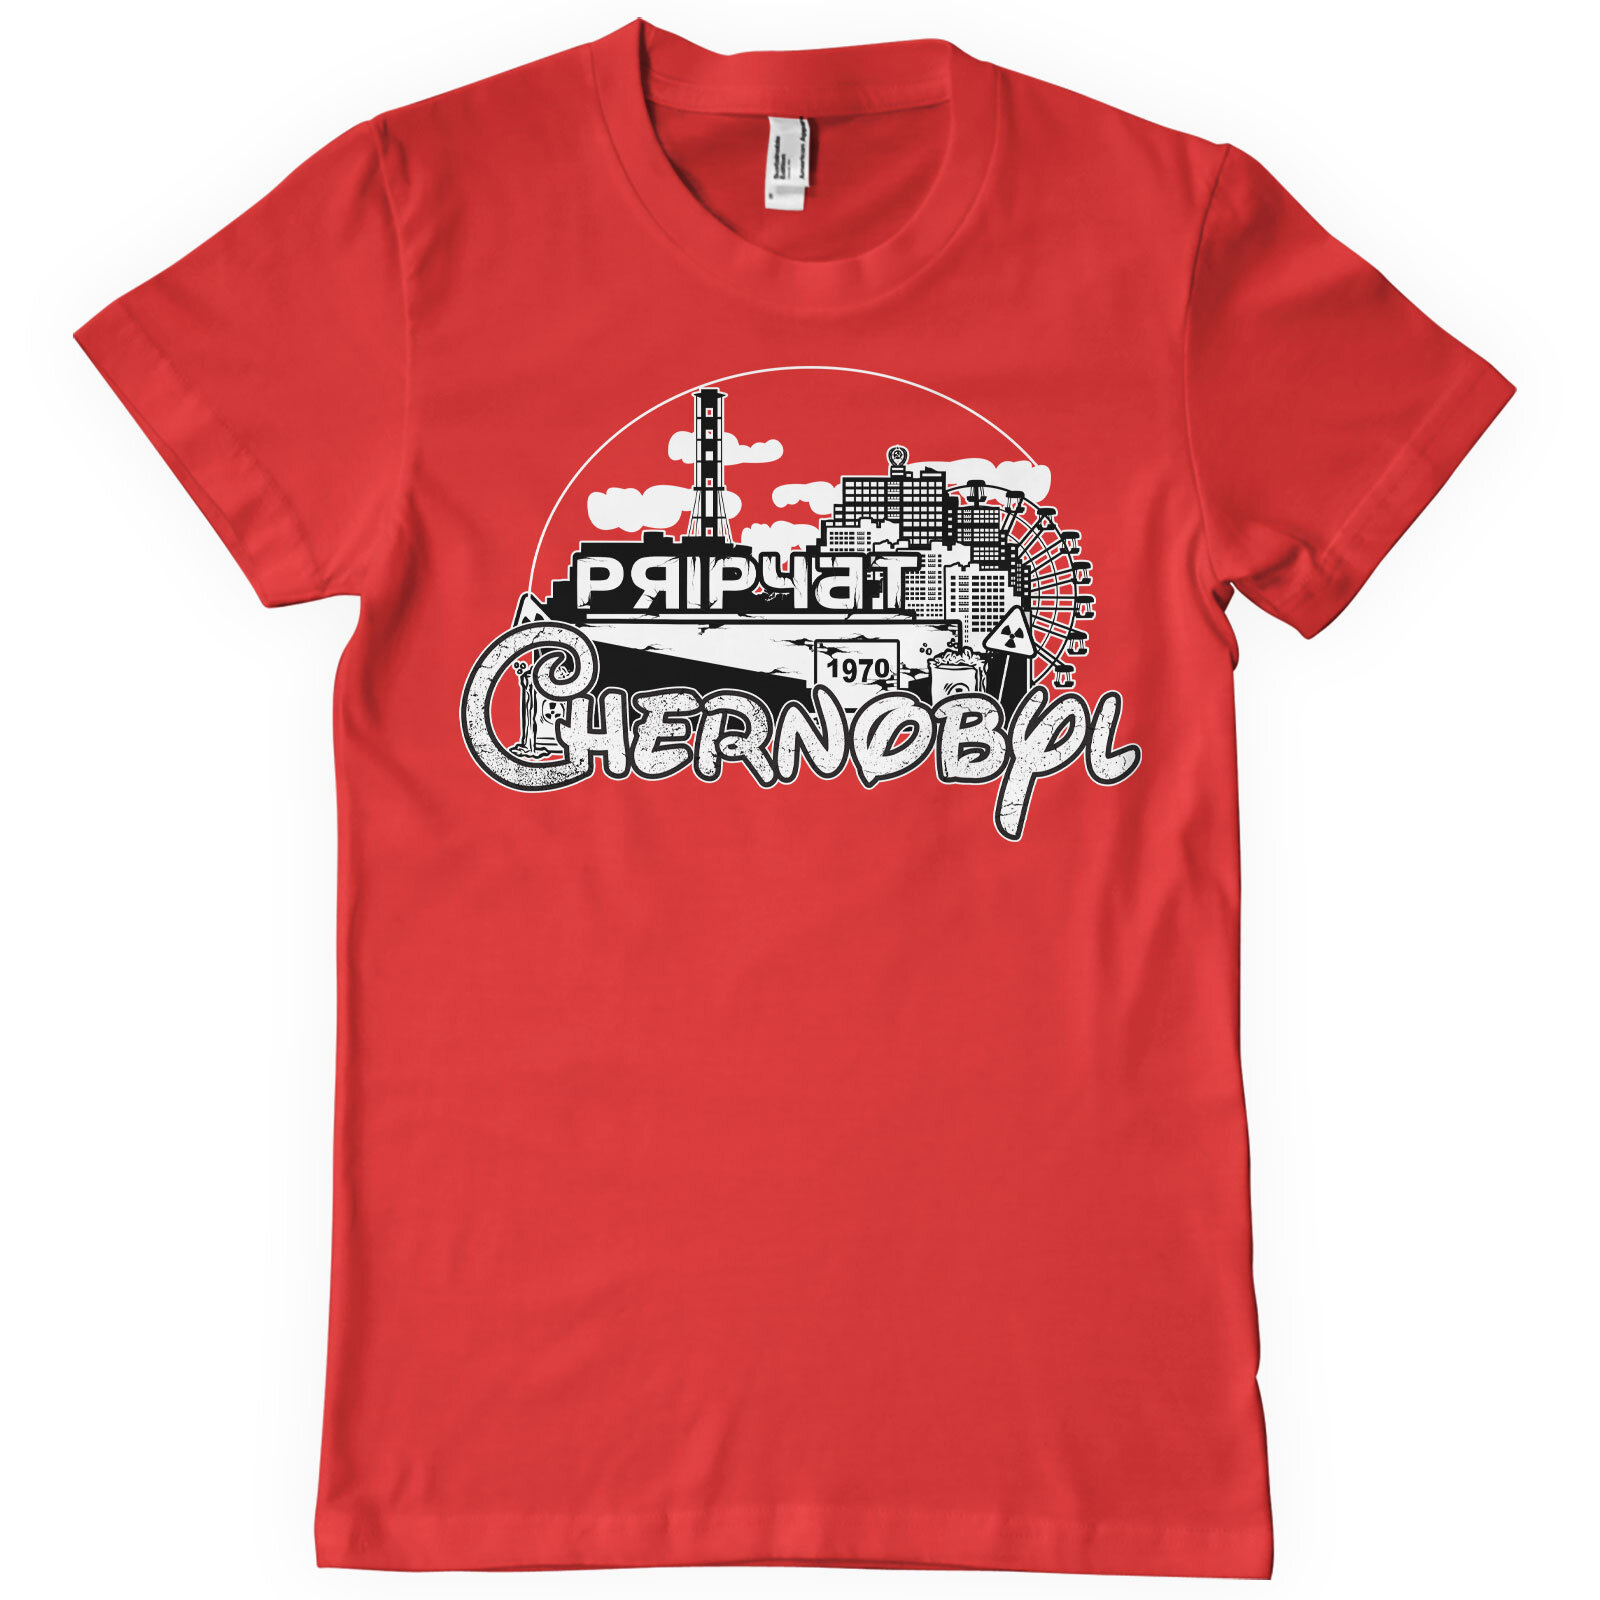 Visit Chernobyl T-Shirt